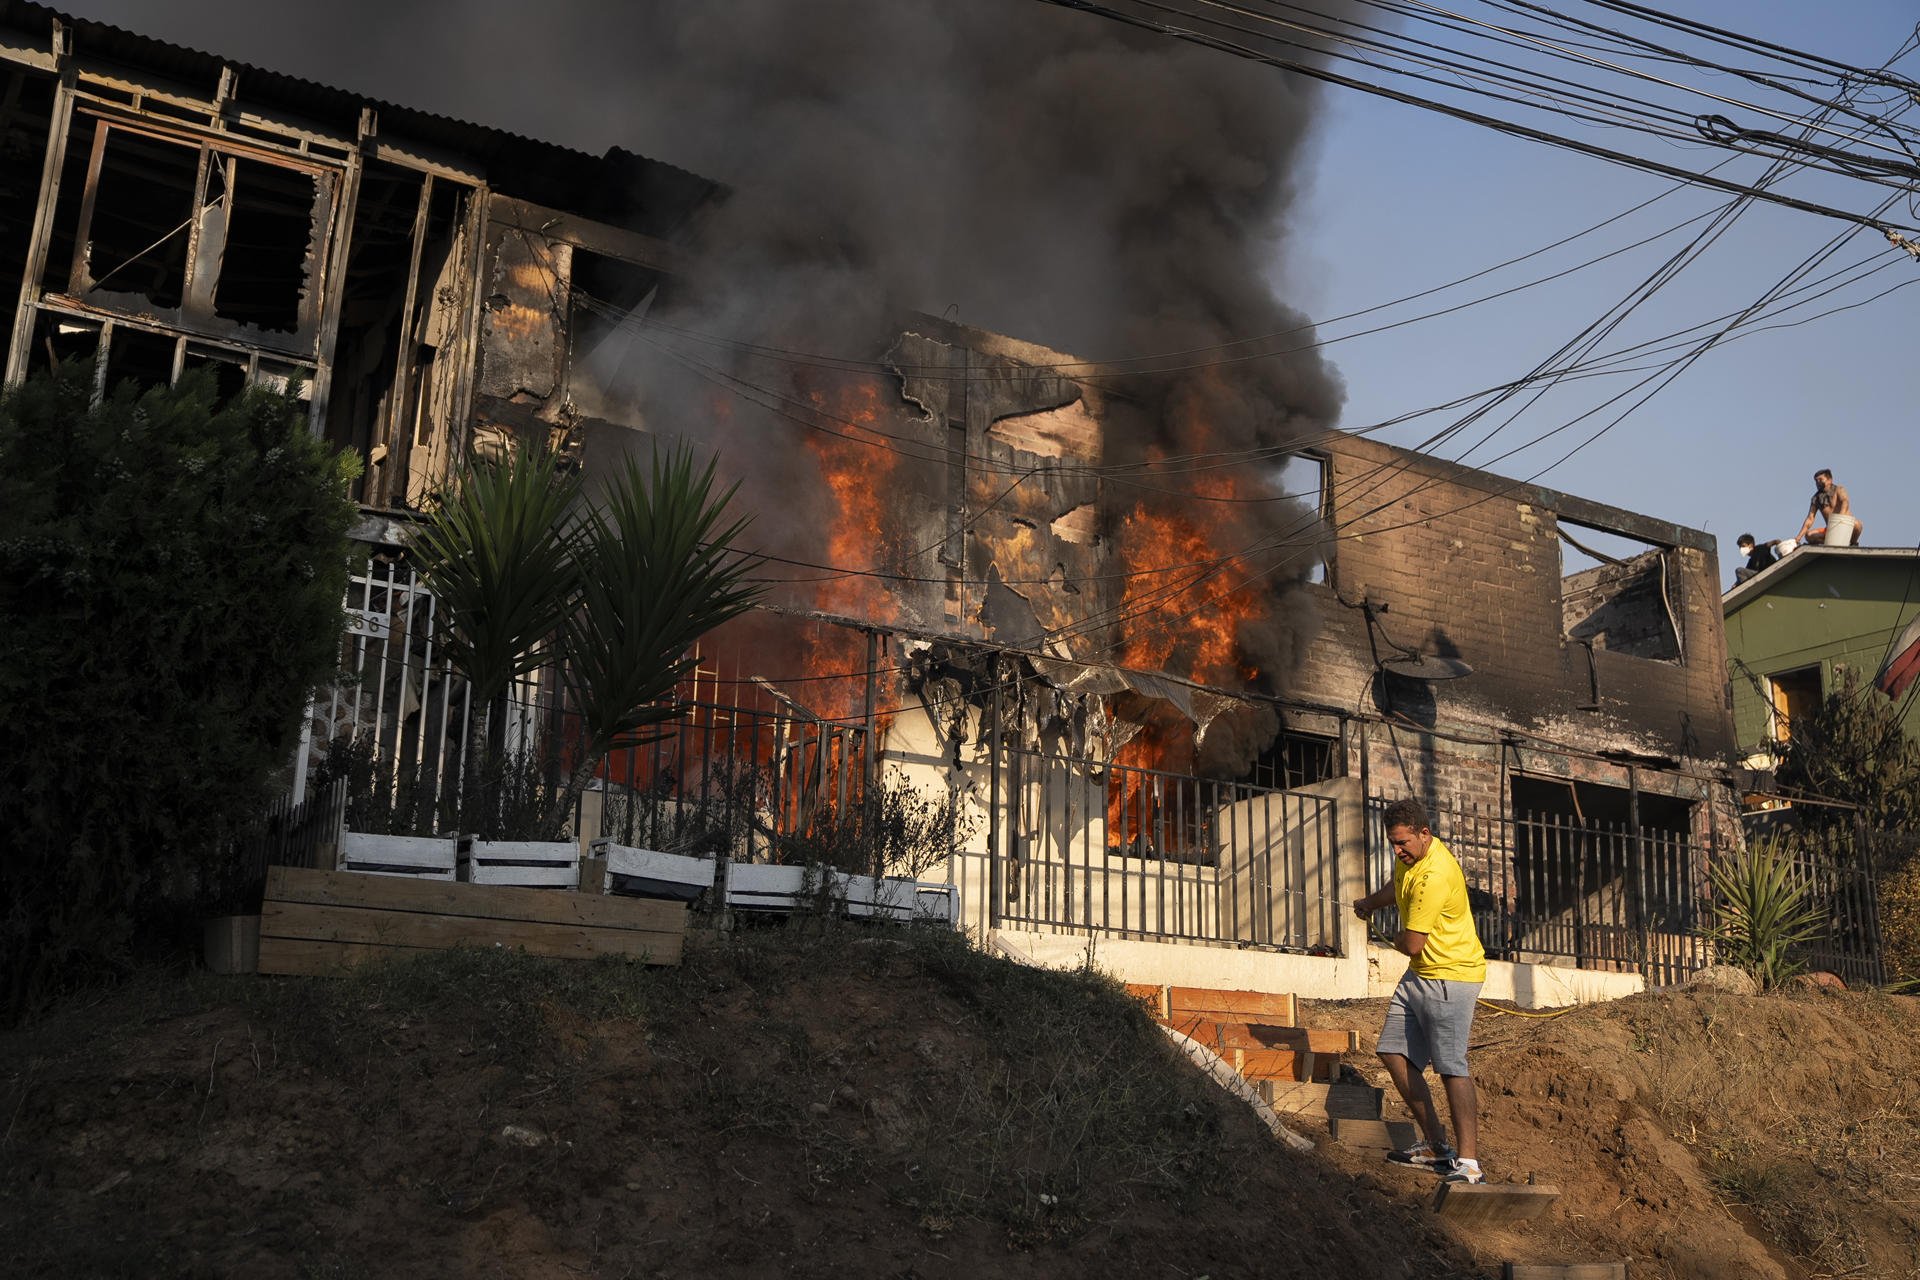 Almenys 19 morts en diversos incendis simultanis al cor de Xile: el foc continua sense control